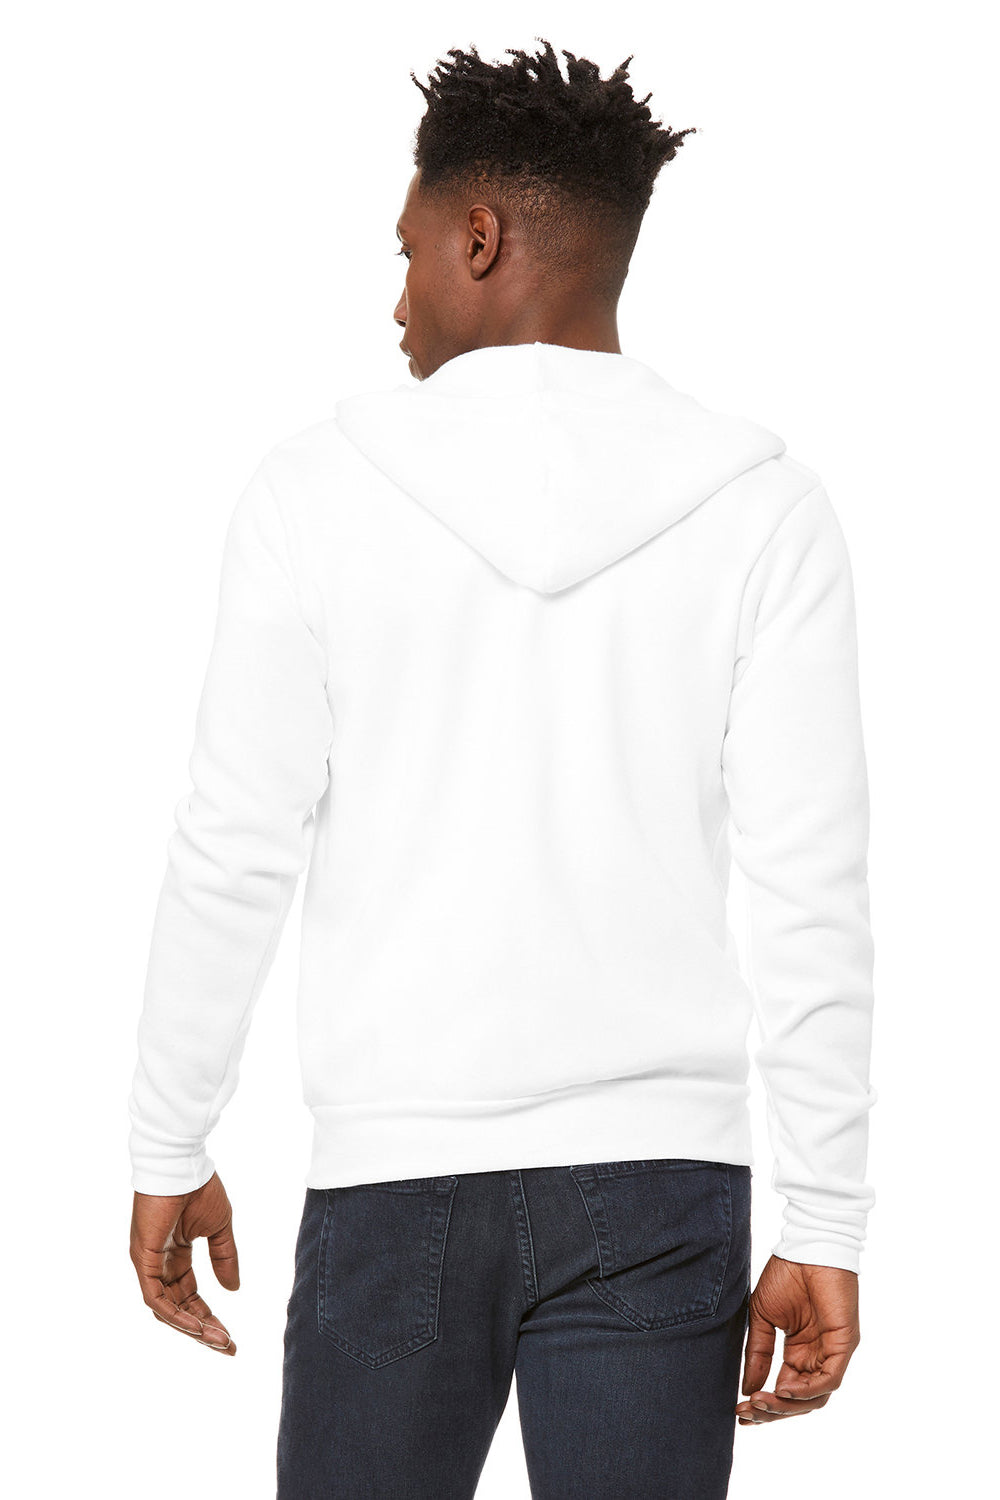 Bella + Canvas BC3739/3739 Mens Fleece Full Zip Hooded Sweatshirt Hoodie DTG White Model Back